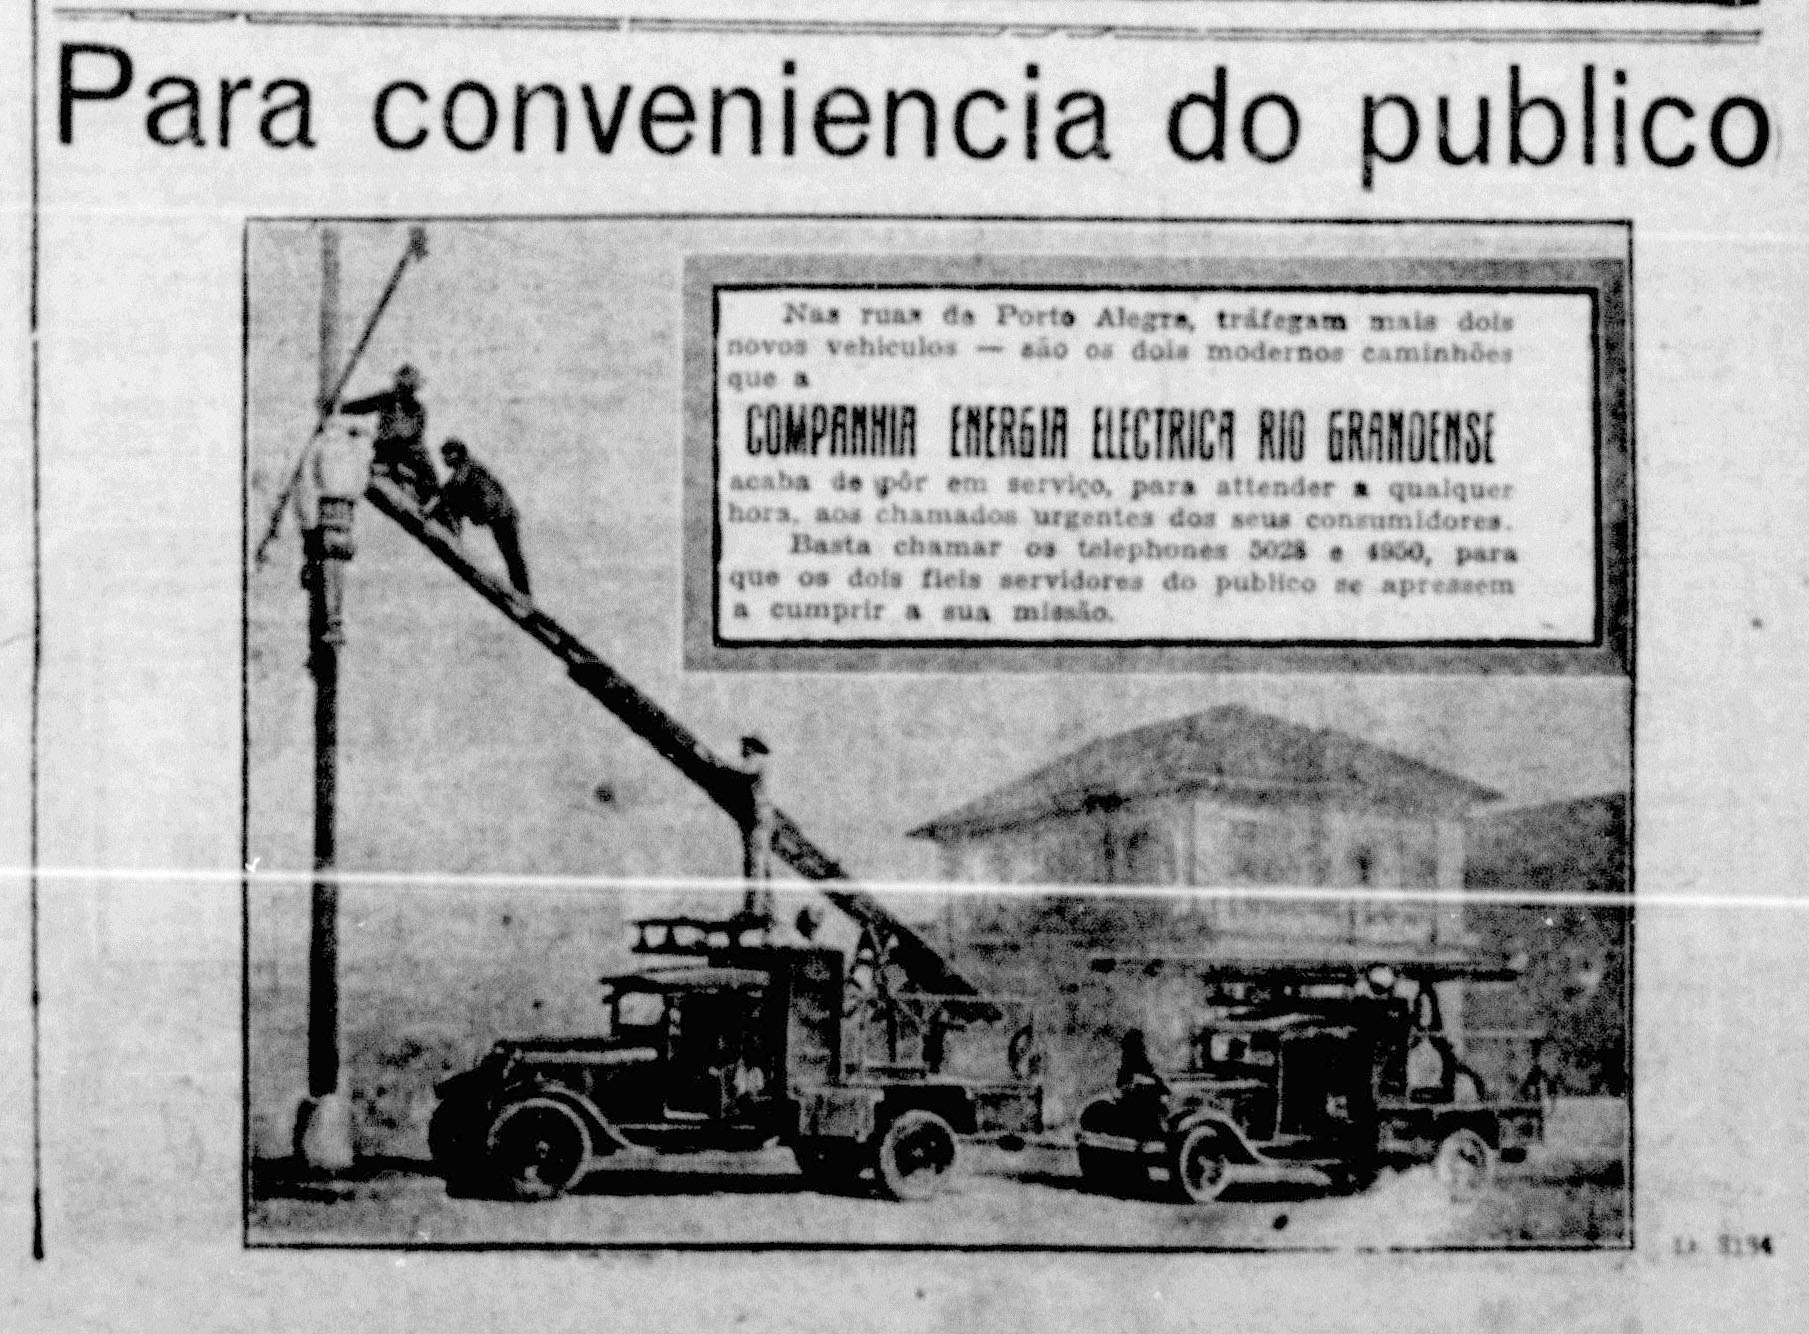 "Para a conveniência do publico". Estado do Rio Grande, Ed00271, 08/09/1930, p. 11. Hemeroteca Digital da Biblioteca Nacional. 